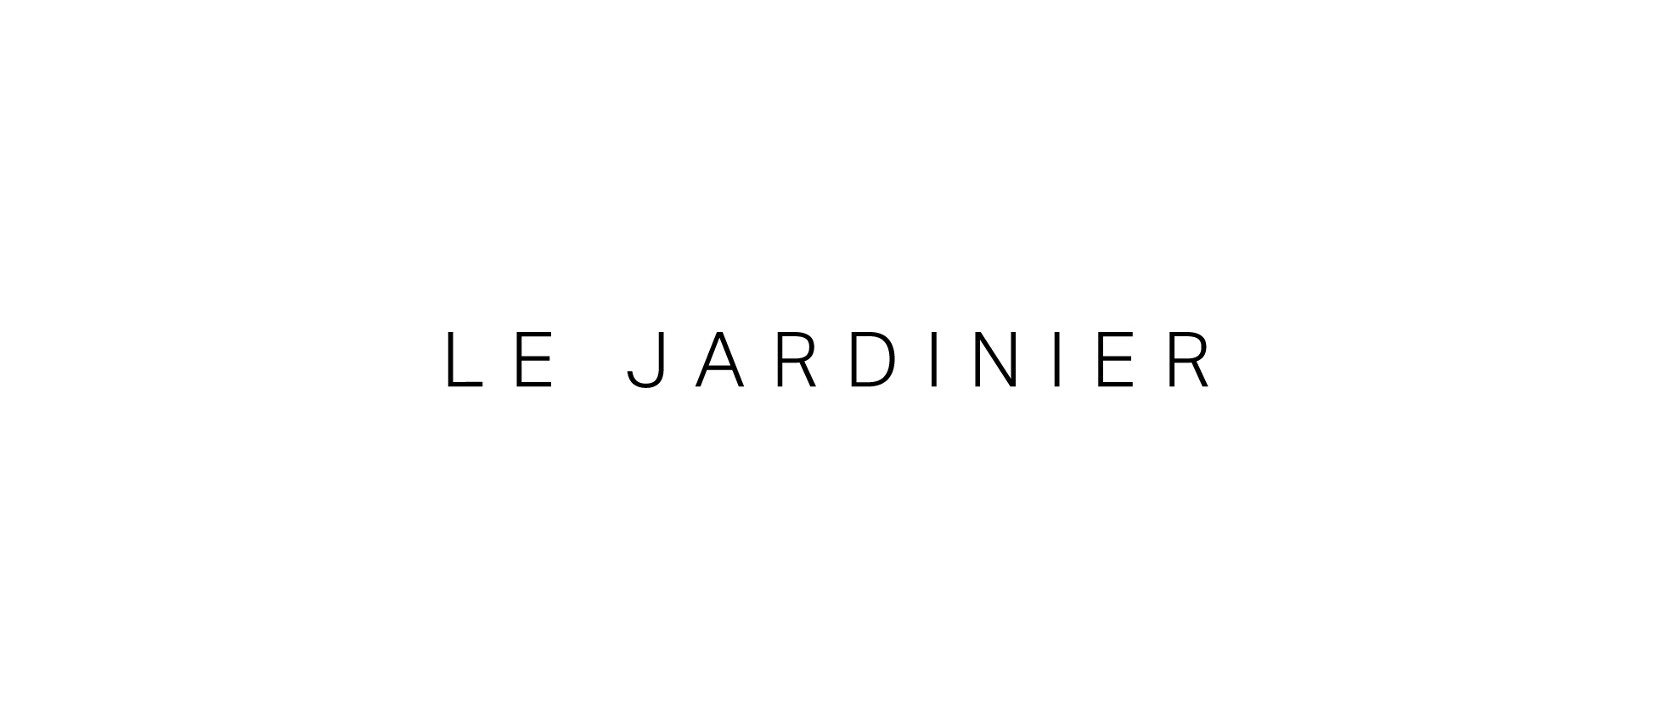 LJ Le Jardinier - Miami